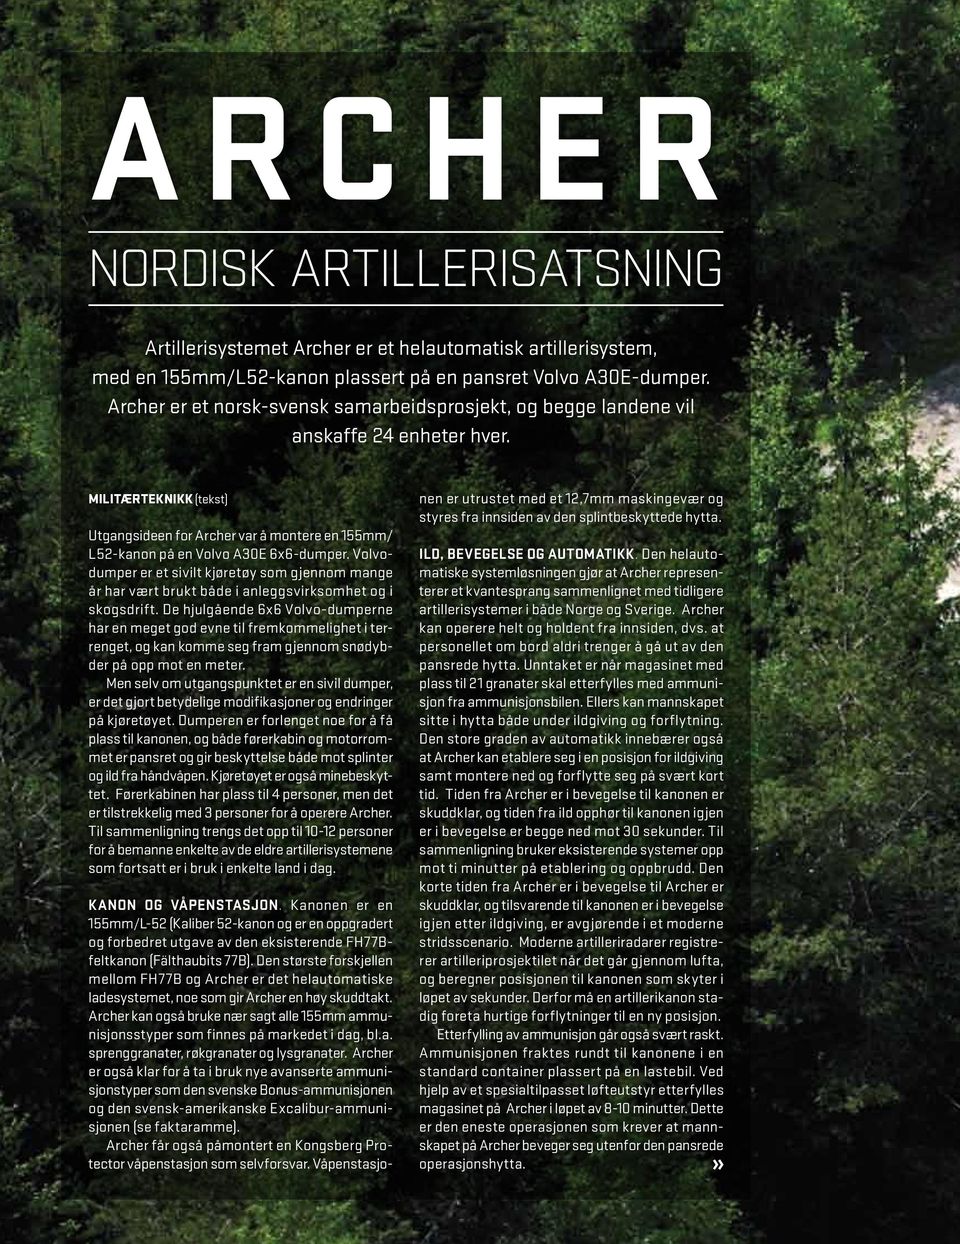 Militærteknikk (tekst) Utgangsideen for Archer var å montere en 155mm/ L52-kanon på en Volvo A30E 6x6-dumper.